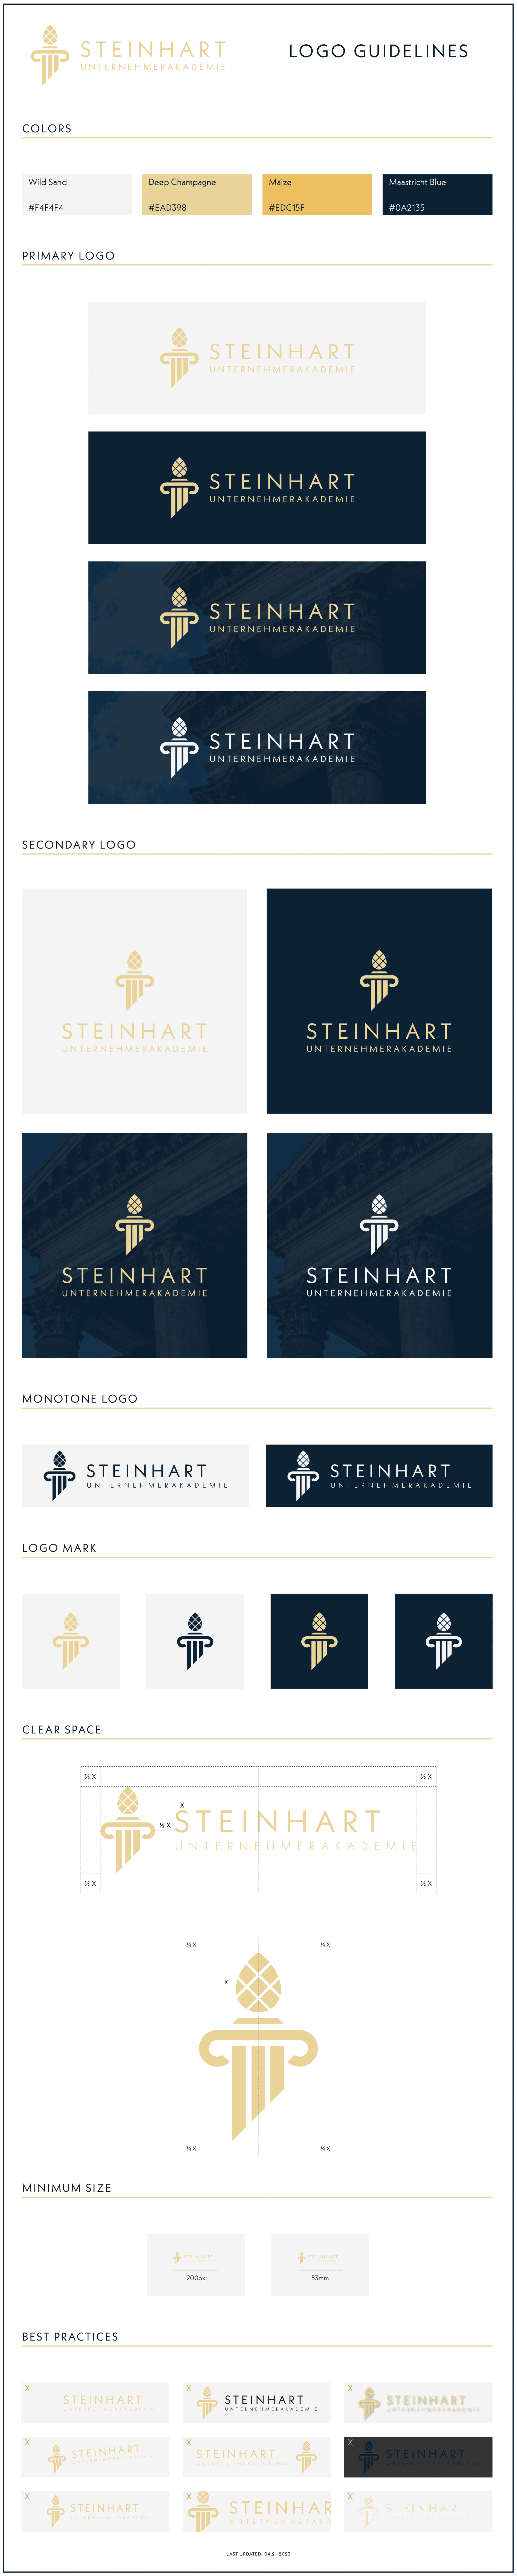 Steinhart Logo Guidelines